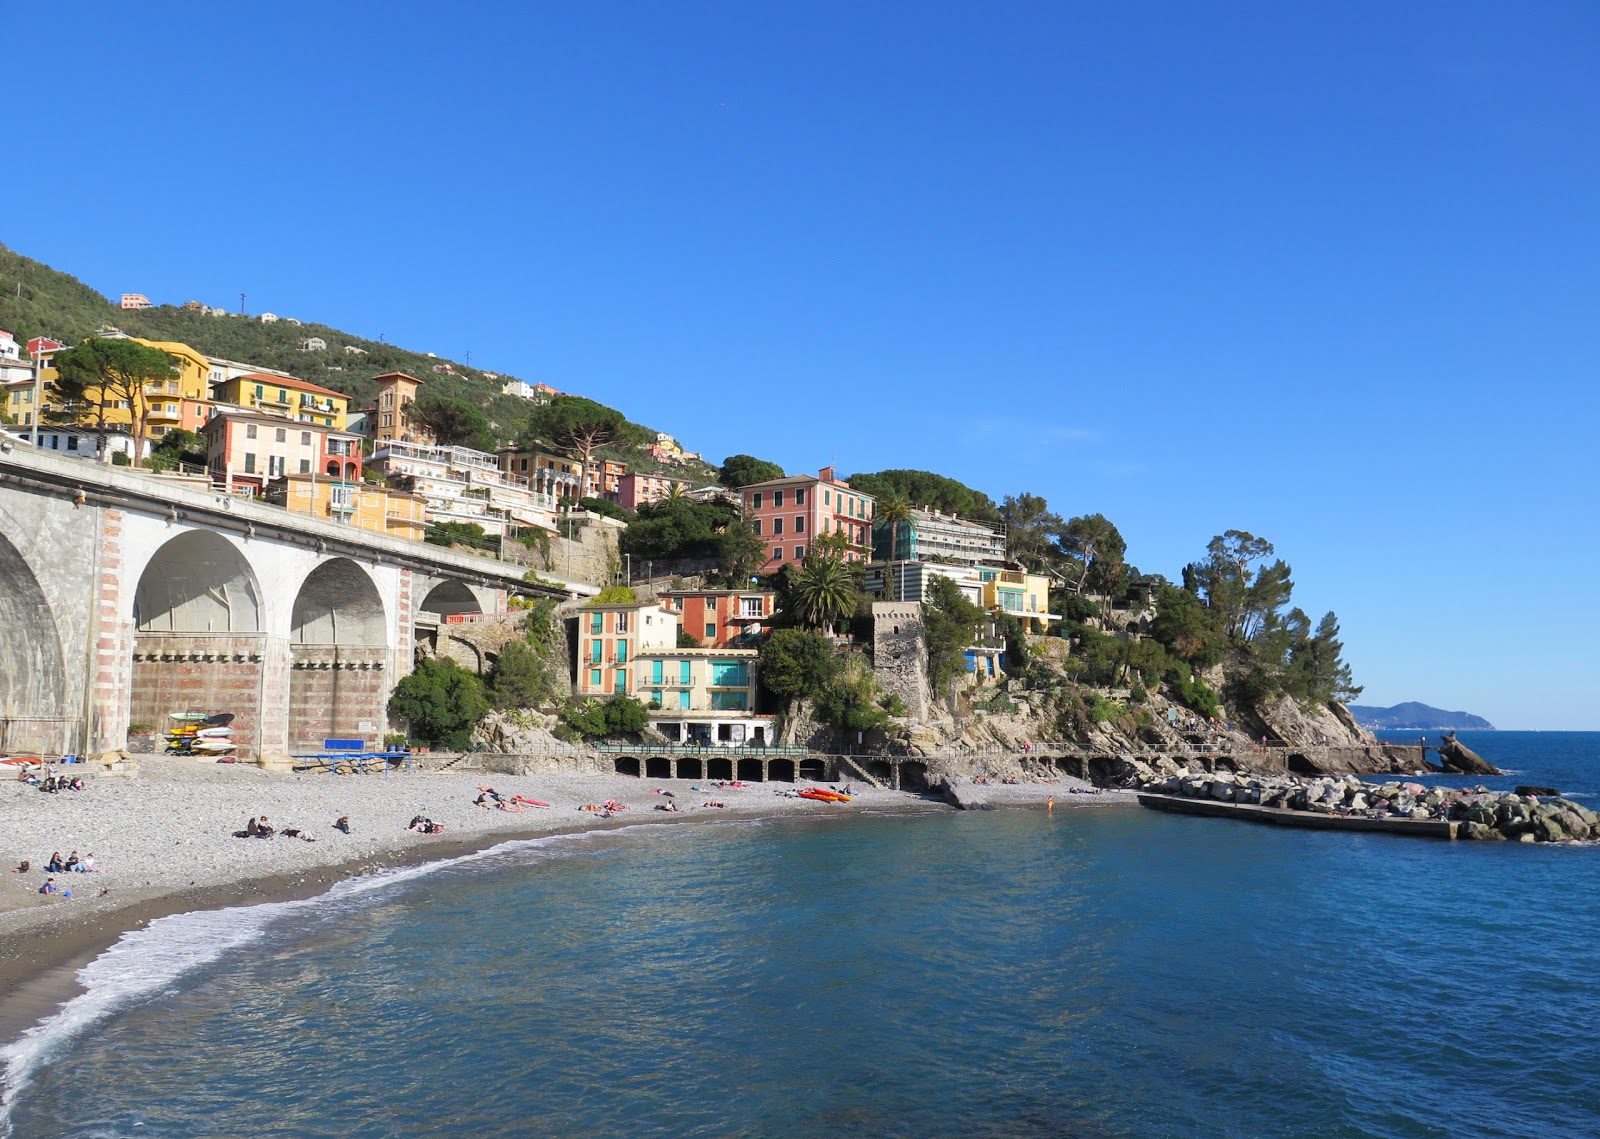 Foto av Spiaggia di Zoagli med grå sten yta